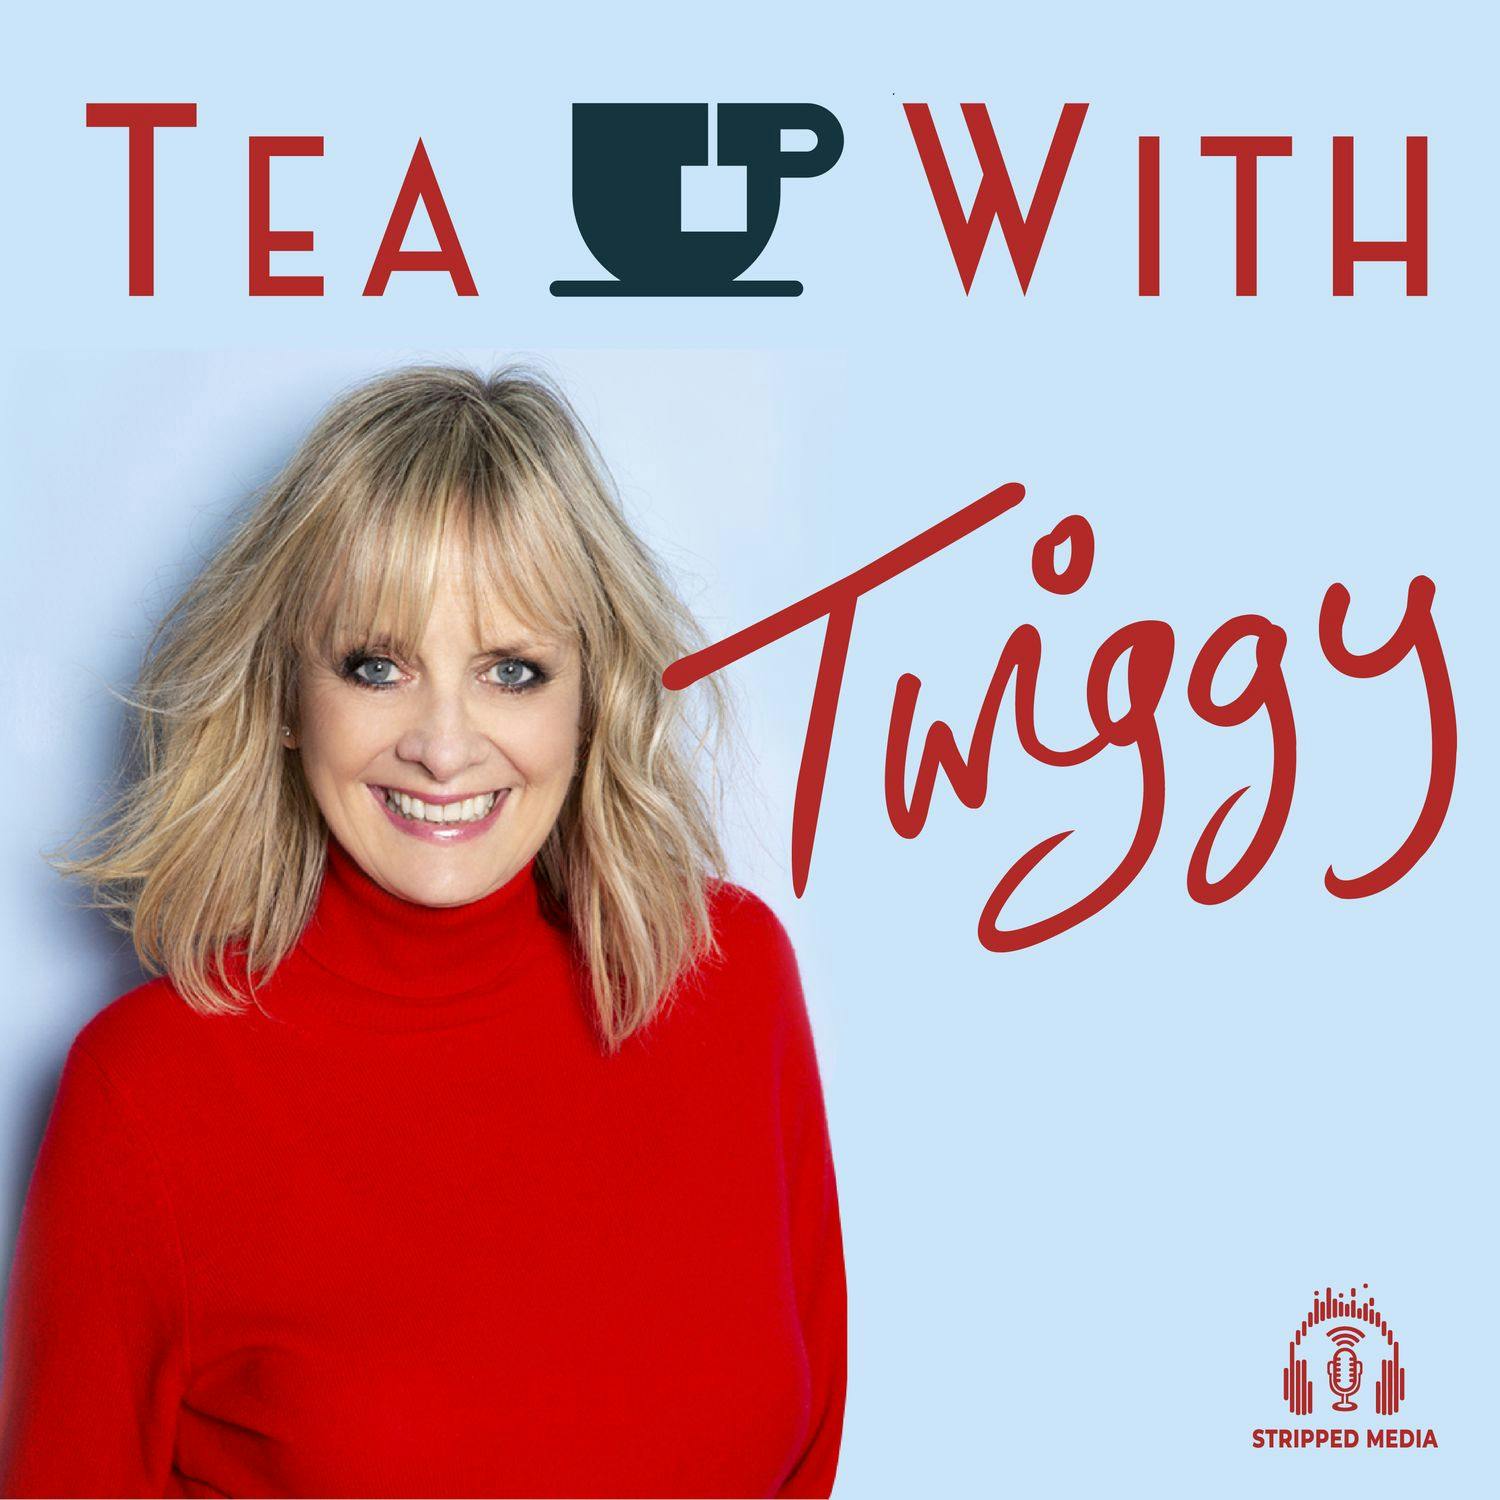 American Actors: Best of Tea With Twiggy